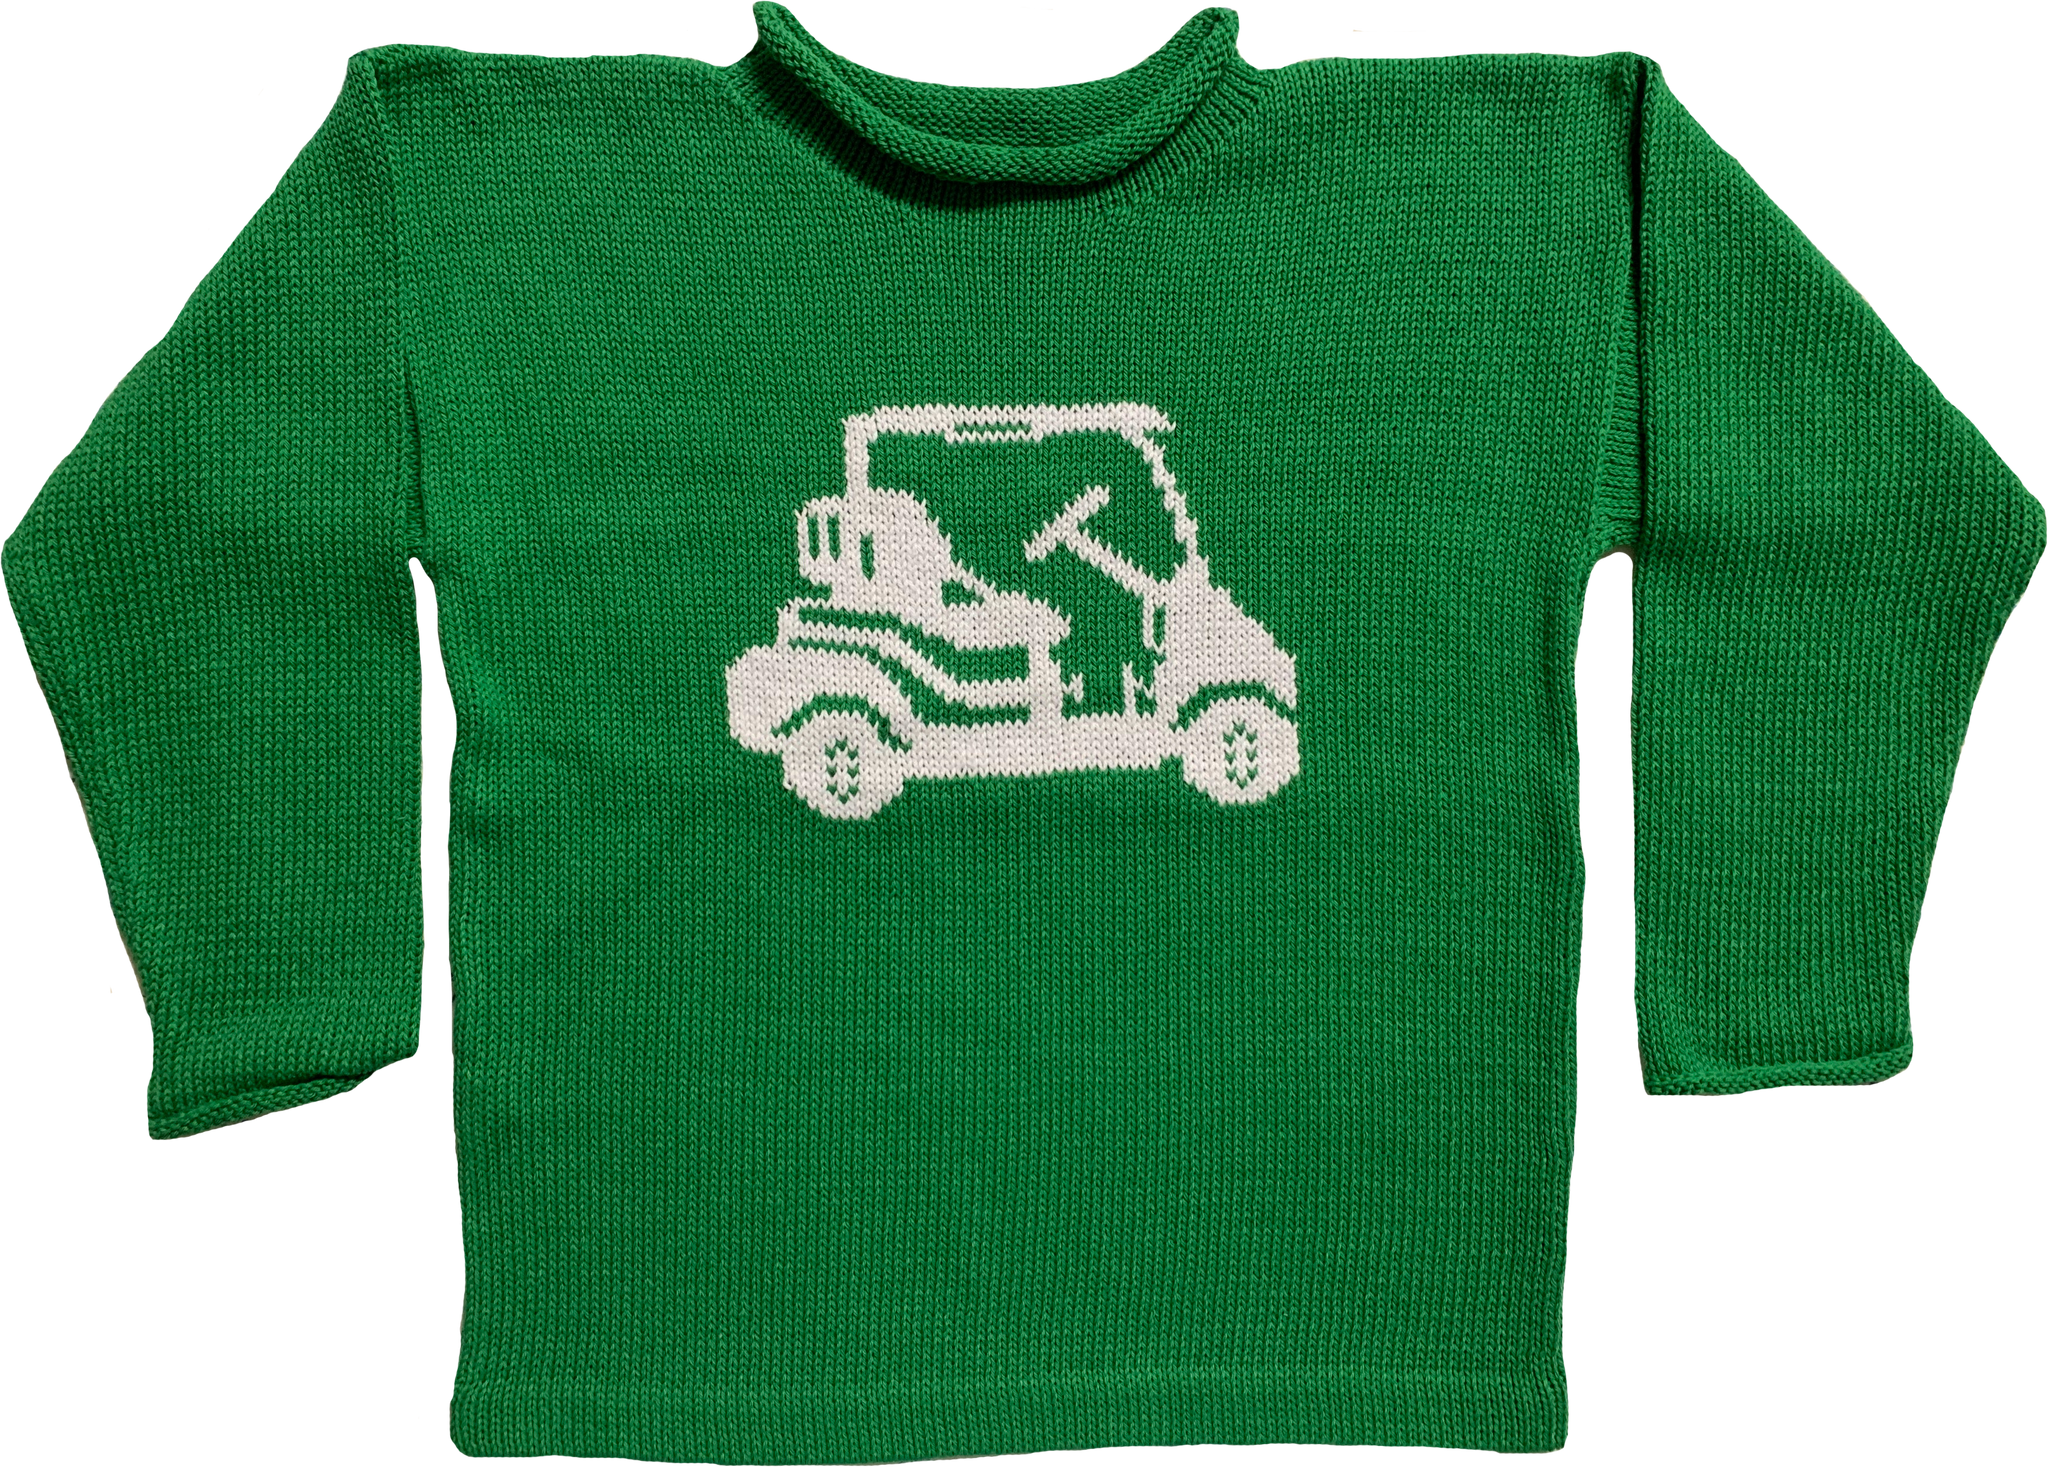 Golf Cart Sweater